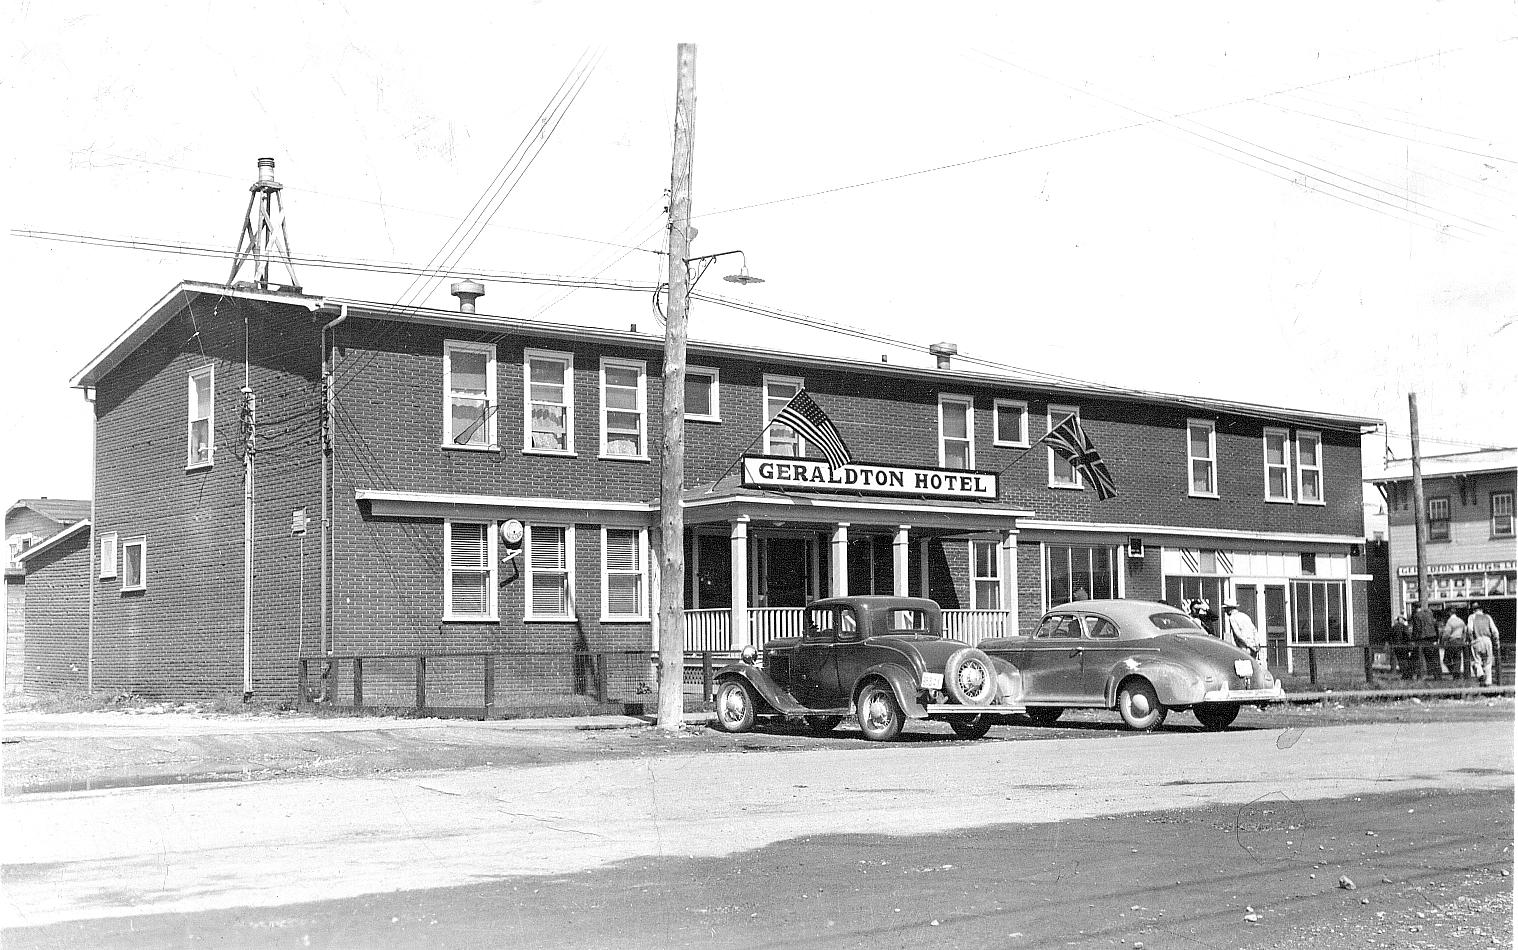 Geraldton Hotel, Geraldton, Ont. before 1946